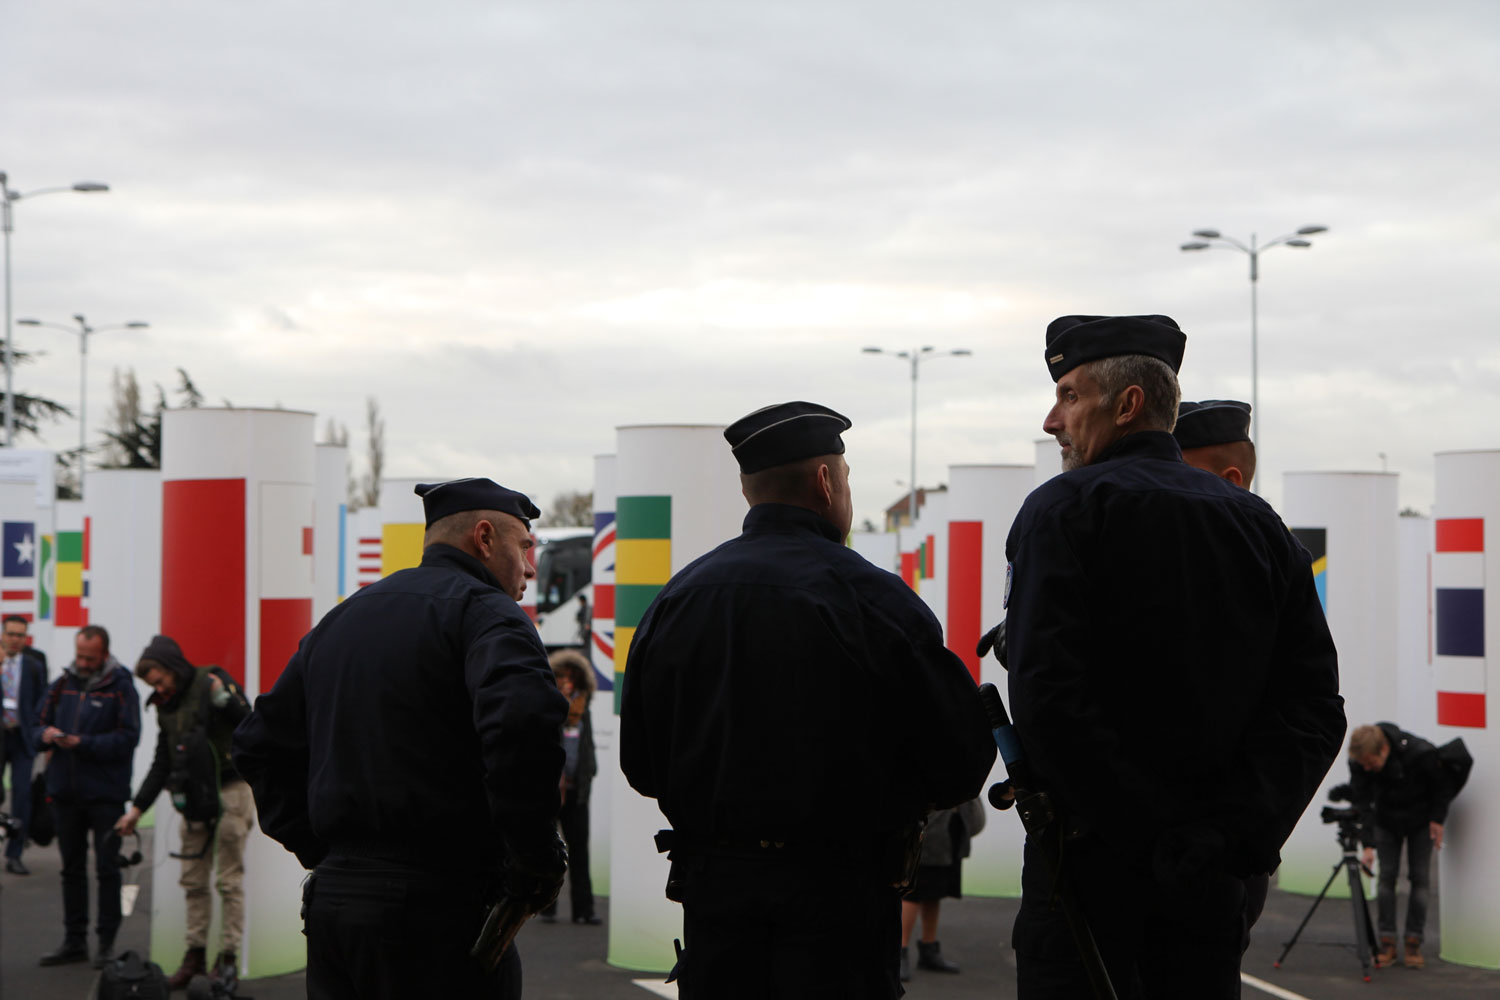 Après les attentats de Paris du 13 novembre, la sécurité est renforcée